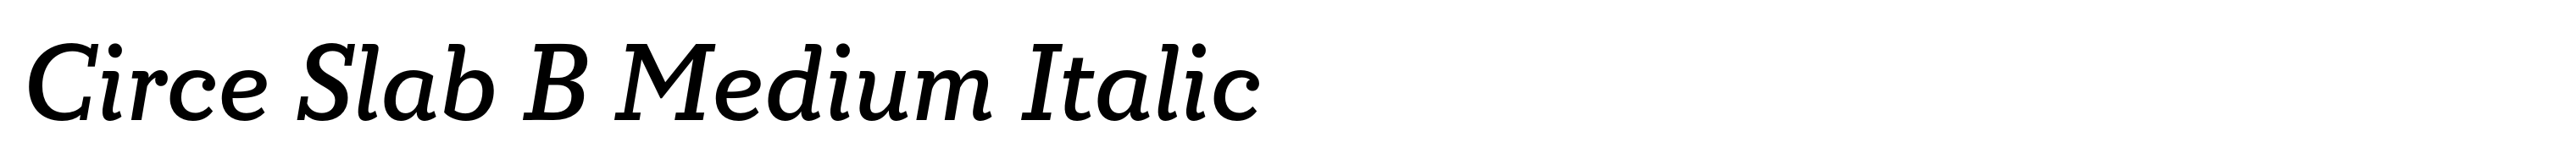 Circe Slab B Medium Italic